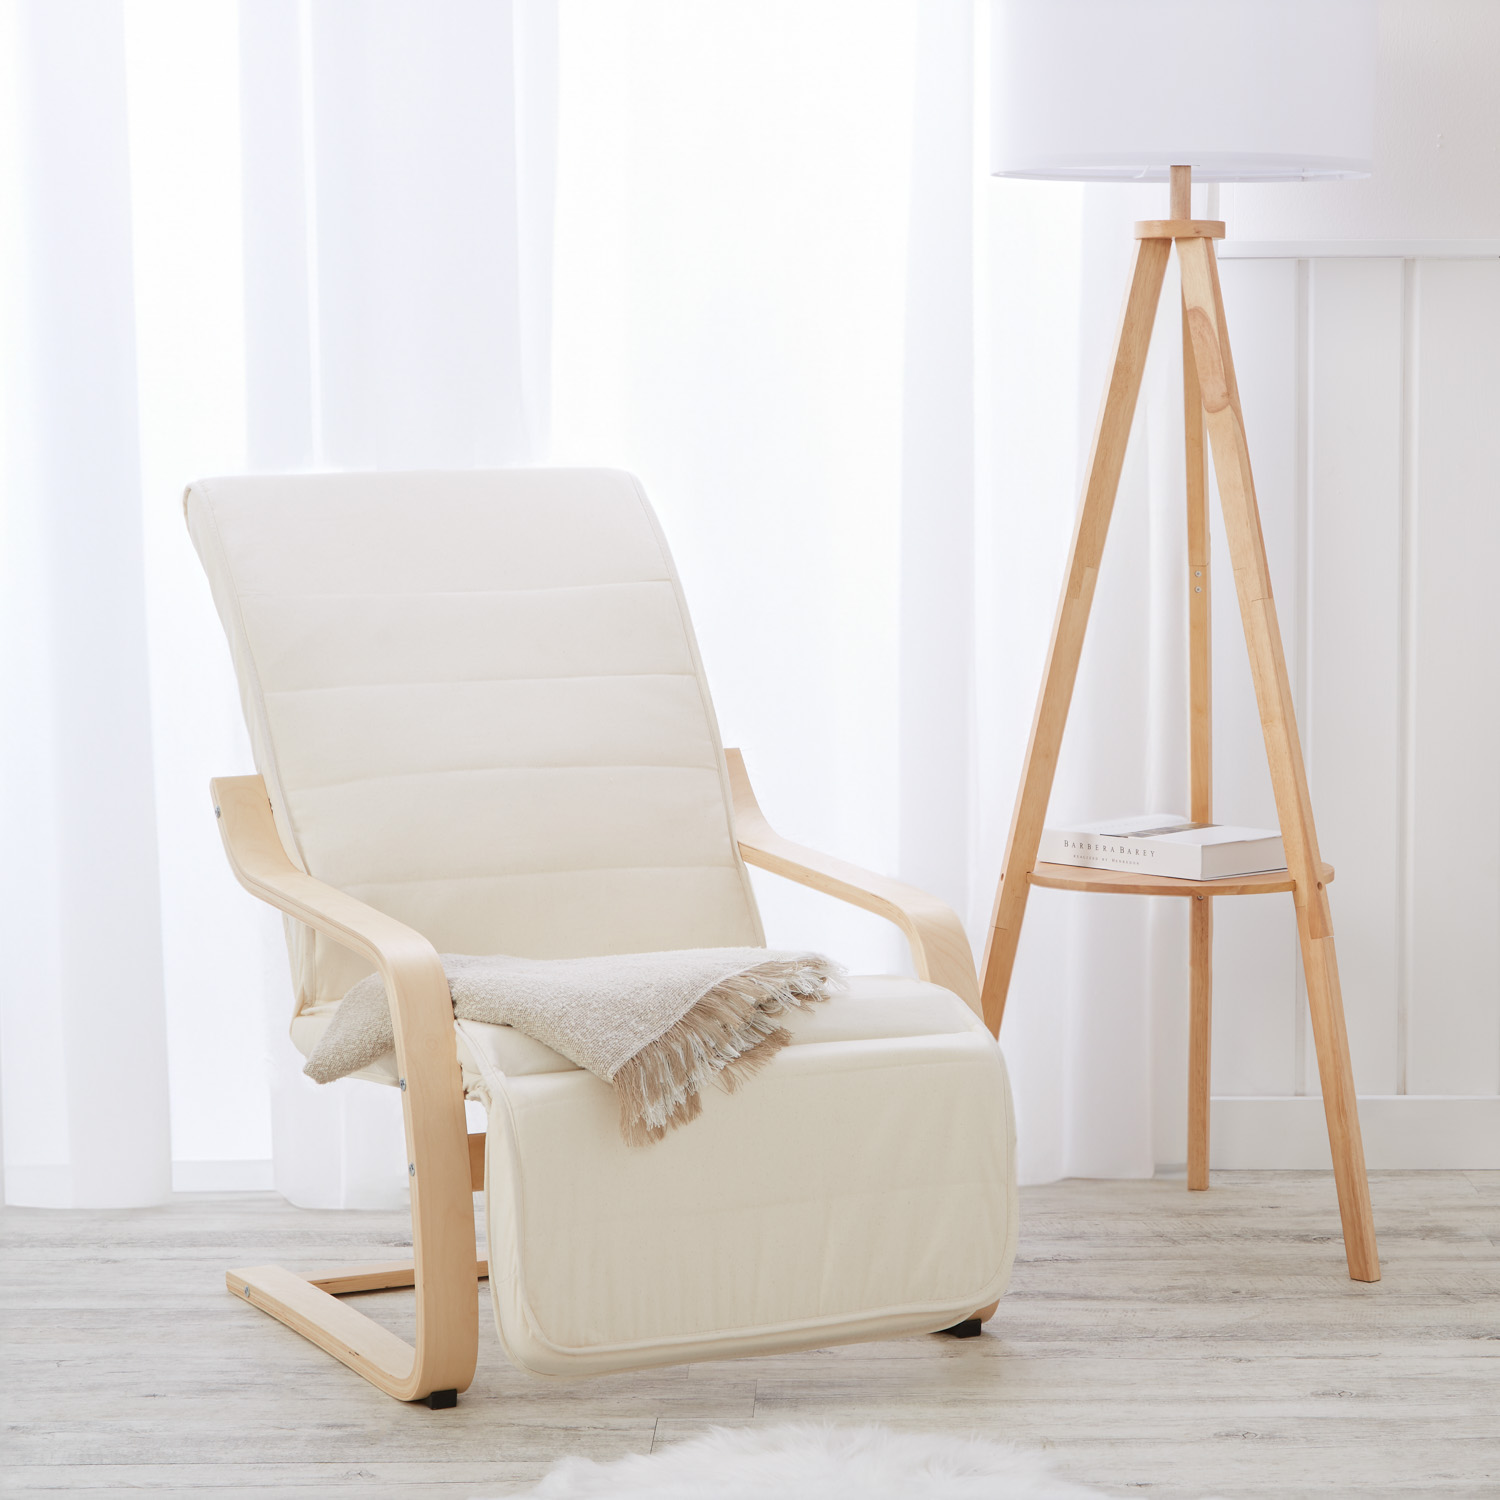 Fauteuil relax avec repose-pieds Fauteuil relaxant Naturelle Chaise longue en bois Fauteuil confort